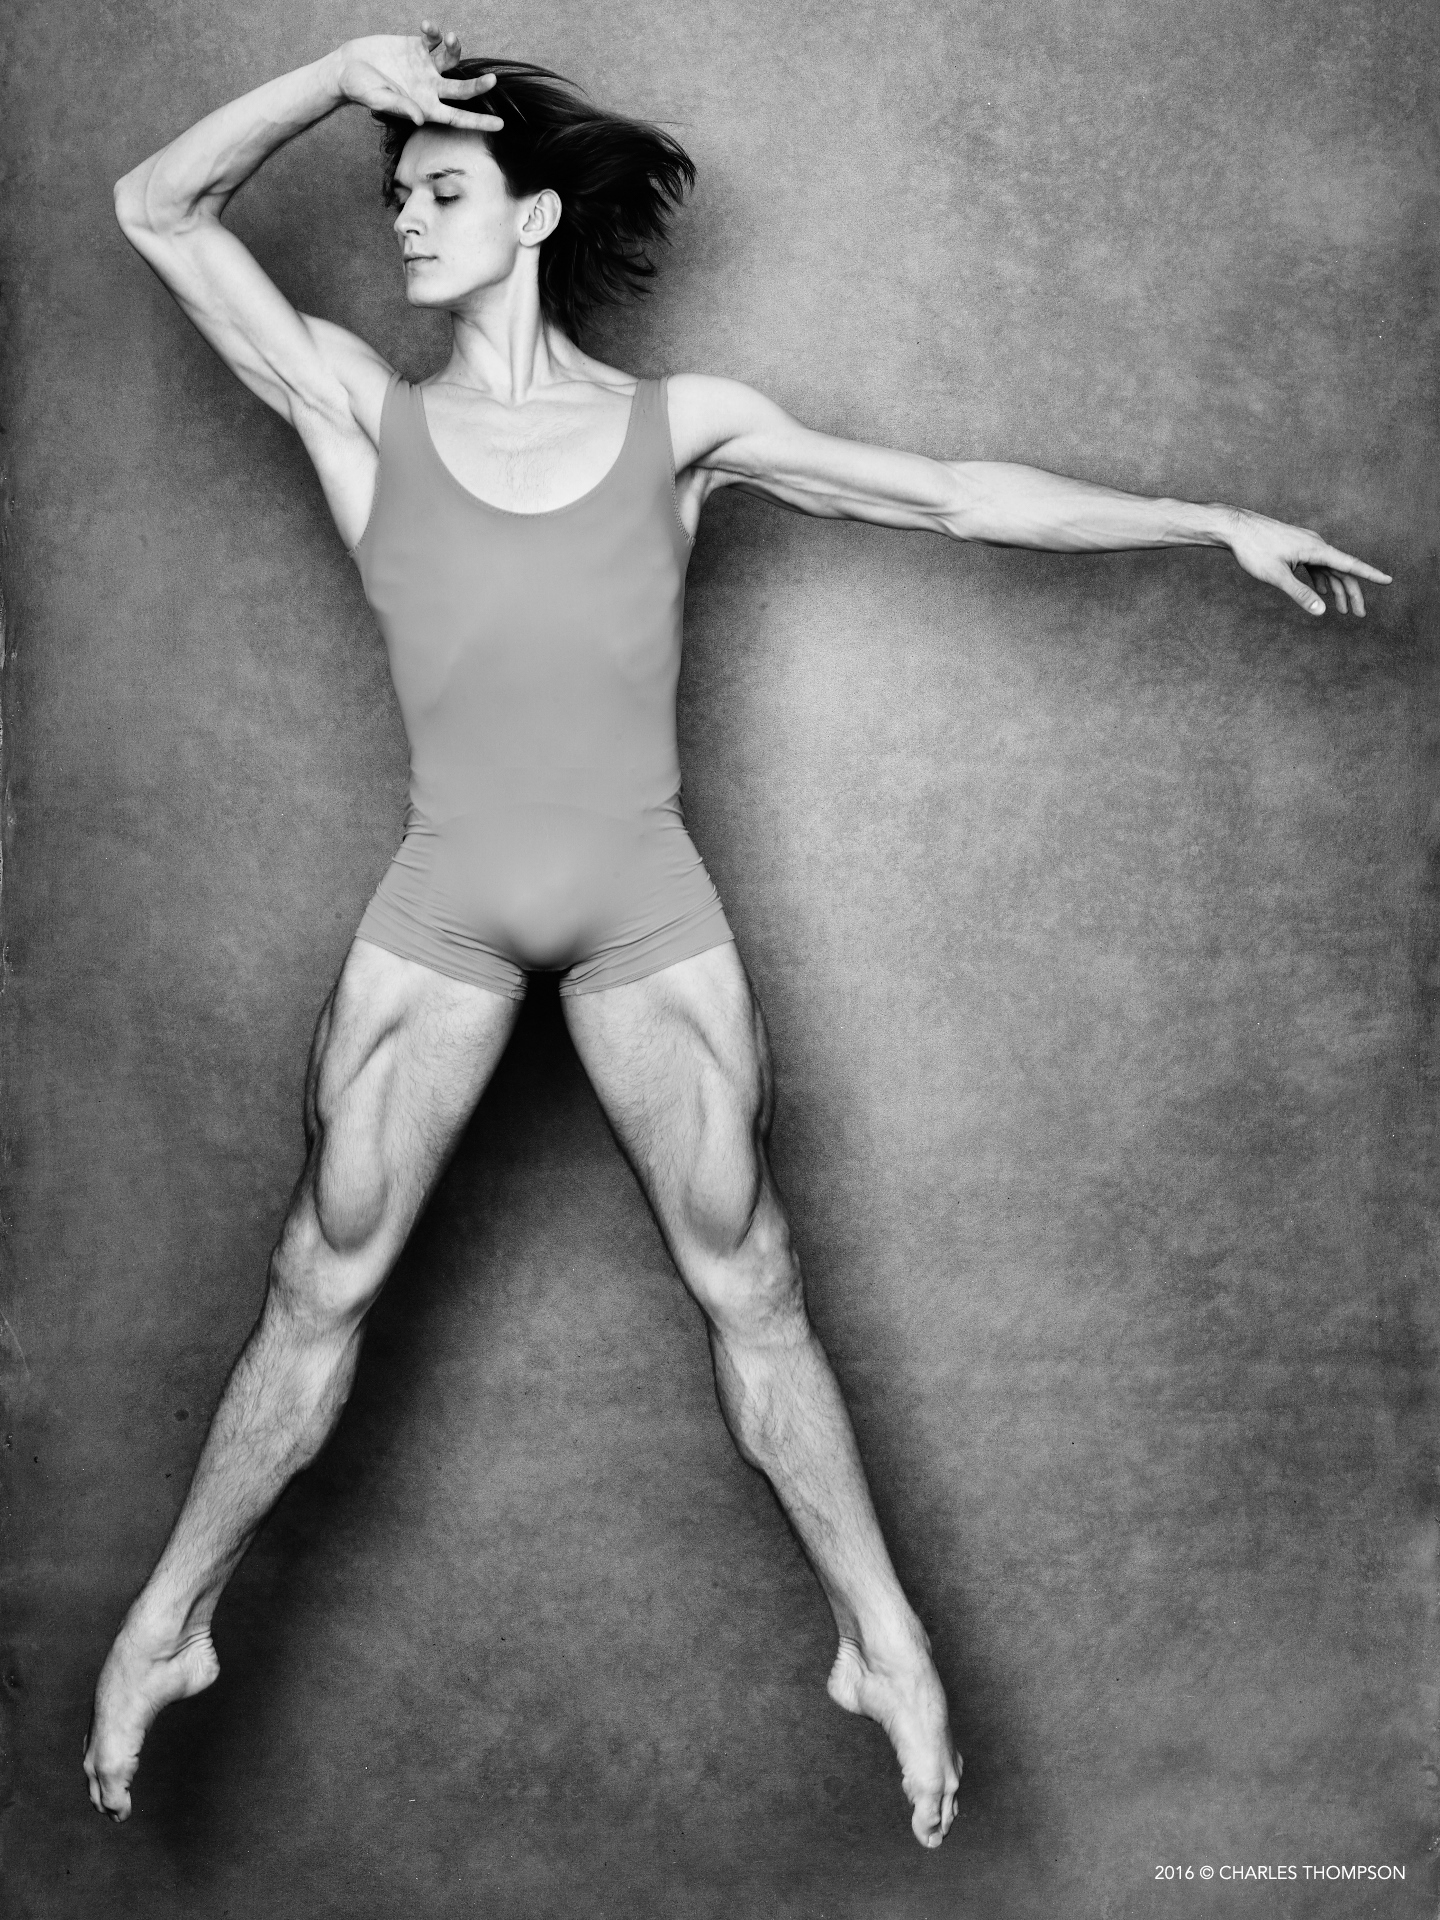  Denis Rodkin, Bolshoi Ballet 